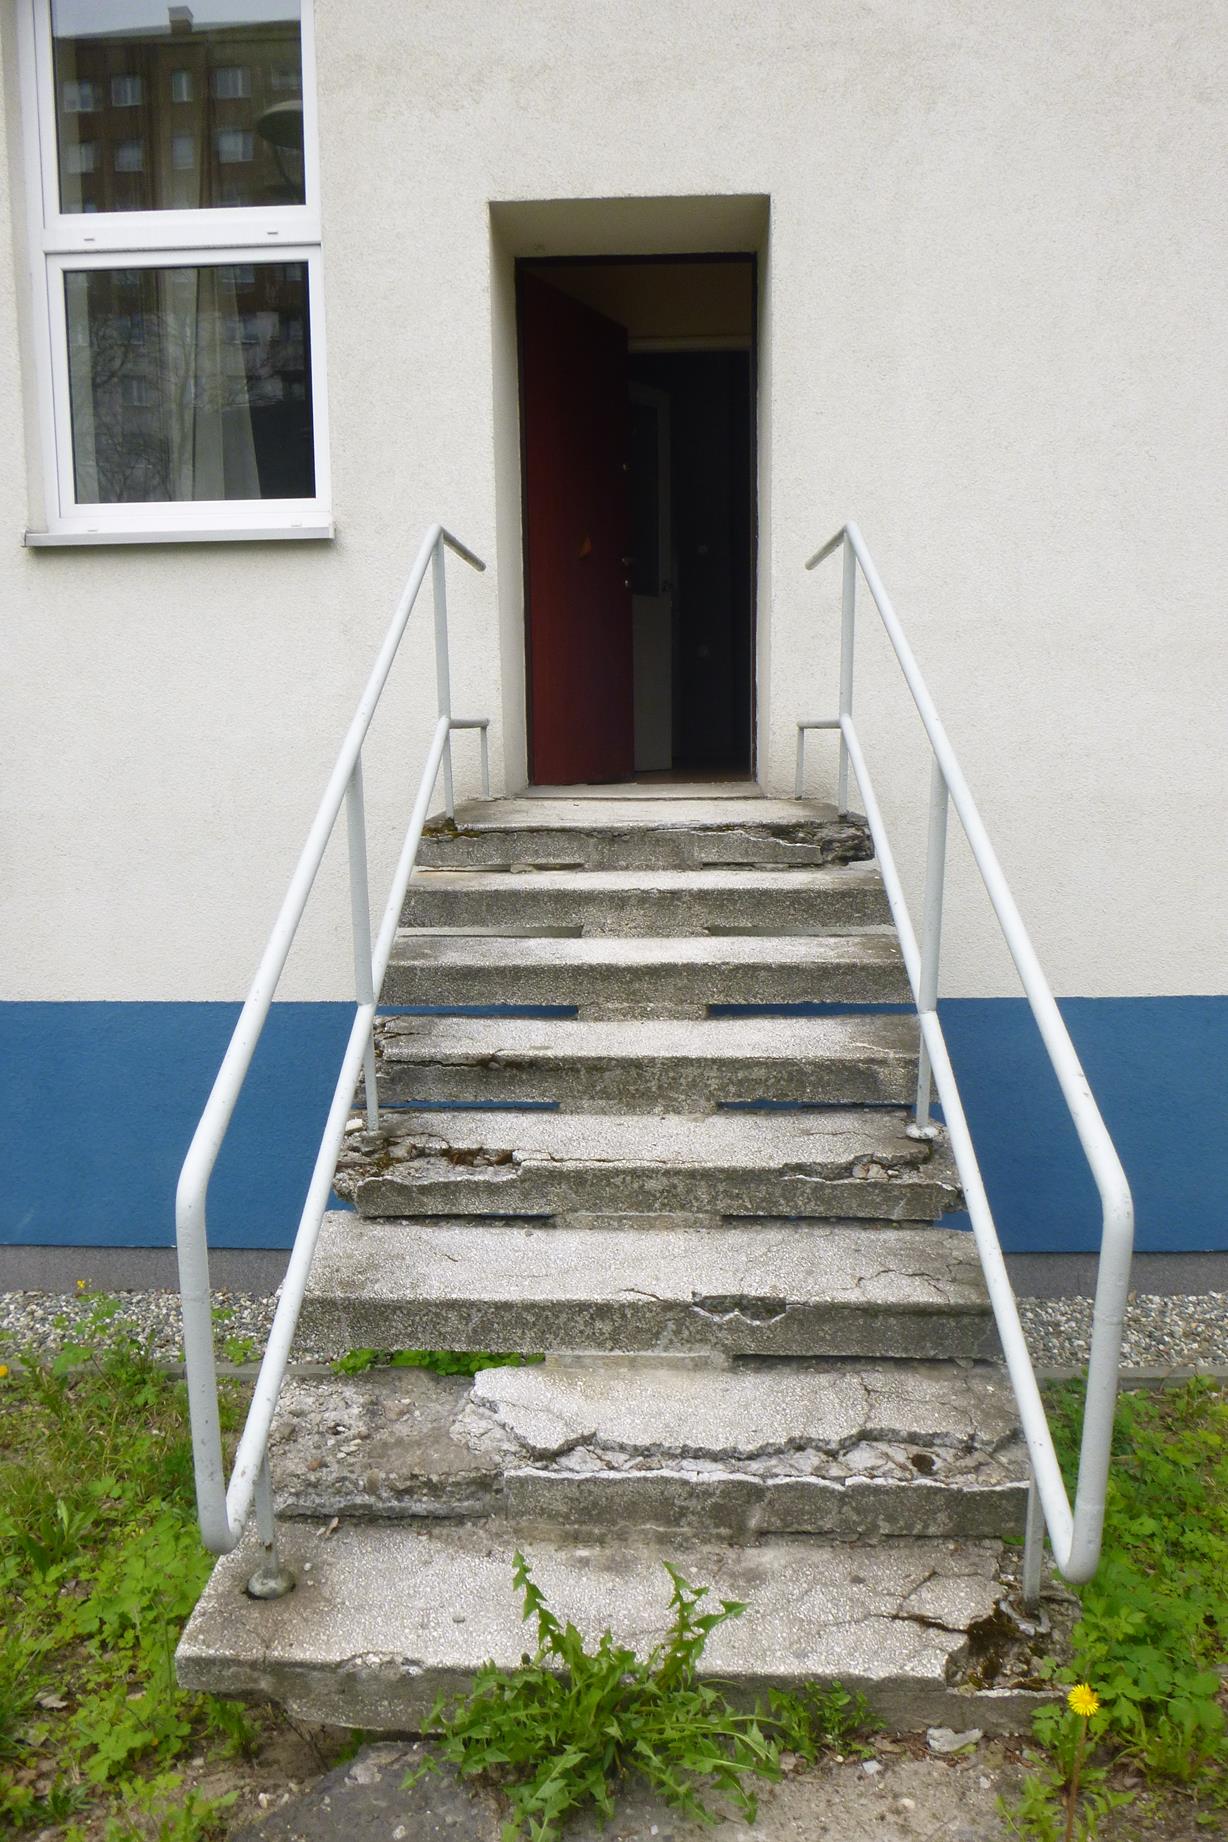 Wejście do budynku przy ulicy Jagiellońskiej przed renowacją - zniszczone schody, barierki i drzwi niezapewniające bezpieczeństwa dzieciom